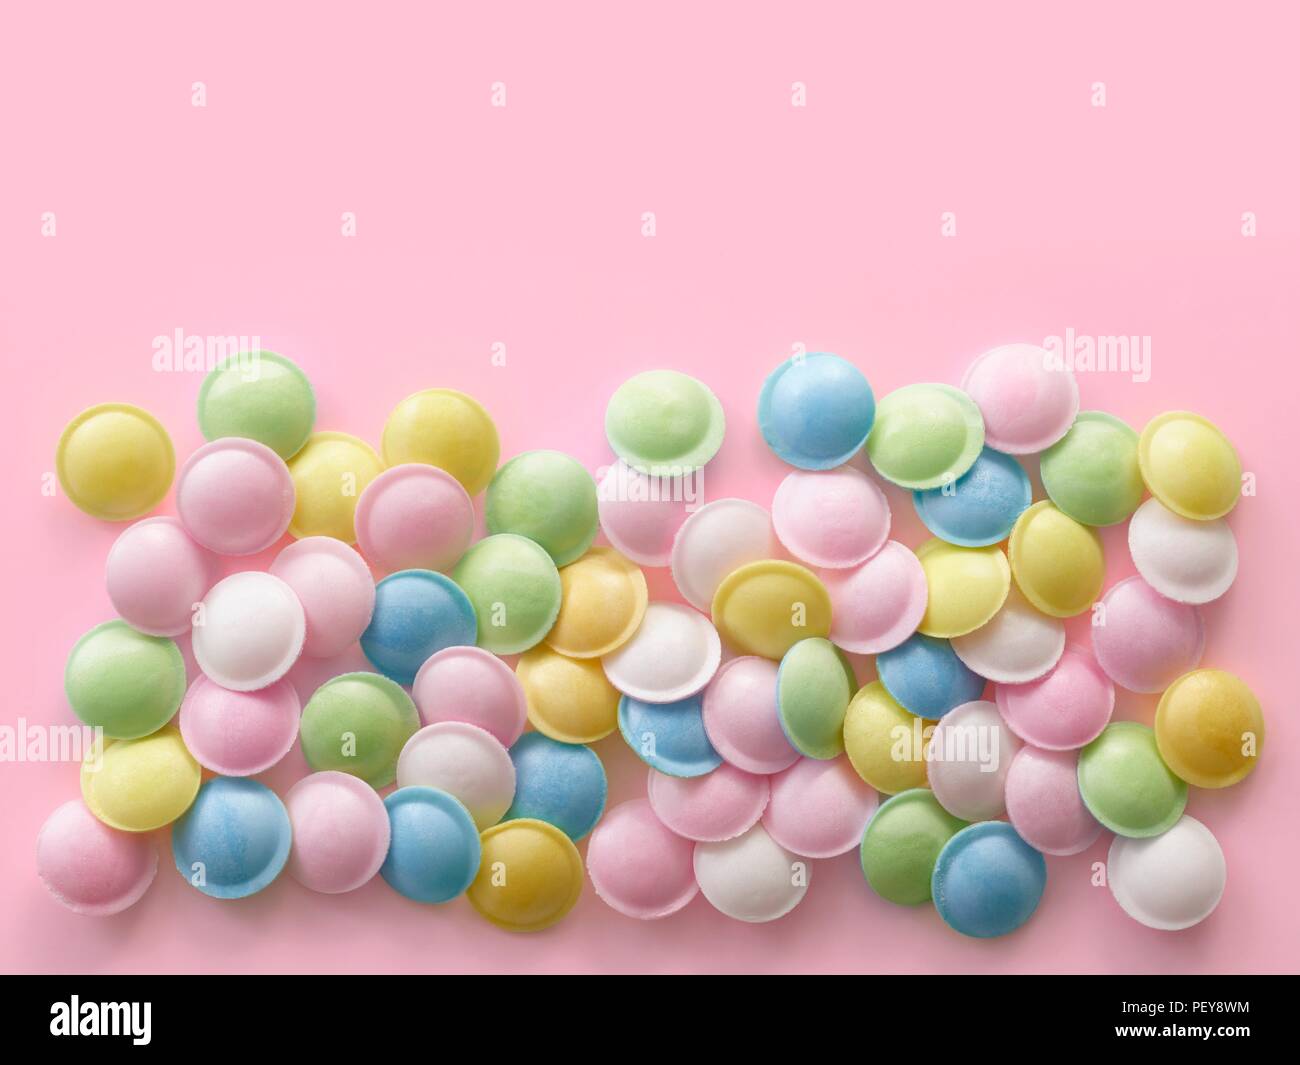 Pastellfarben Süßigkeiten gegen einen rosa Hintergrund gefärbt. Stockfoto